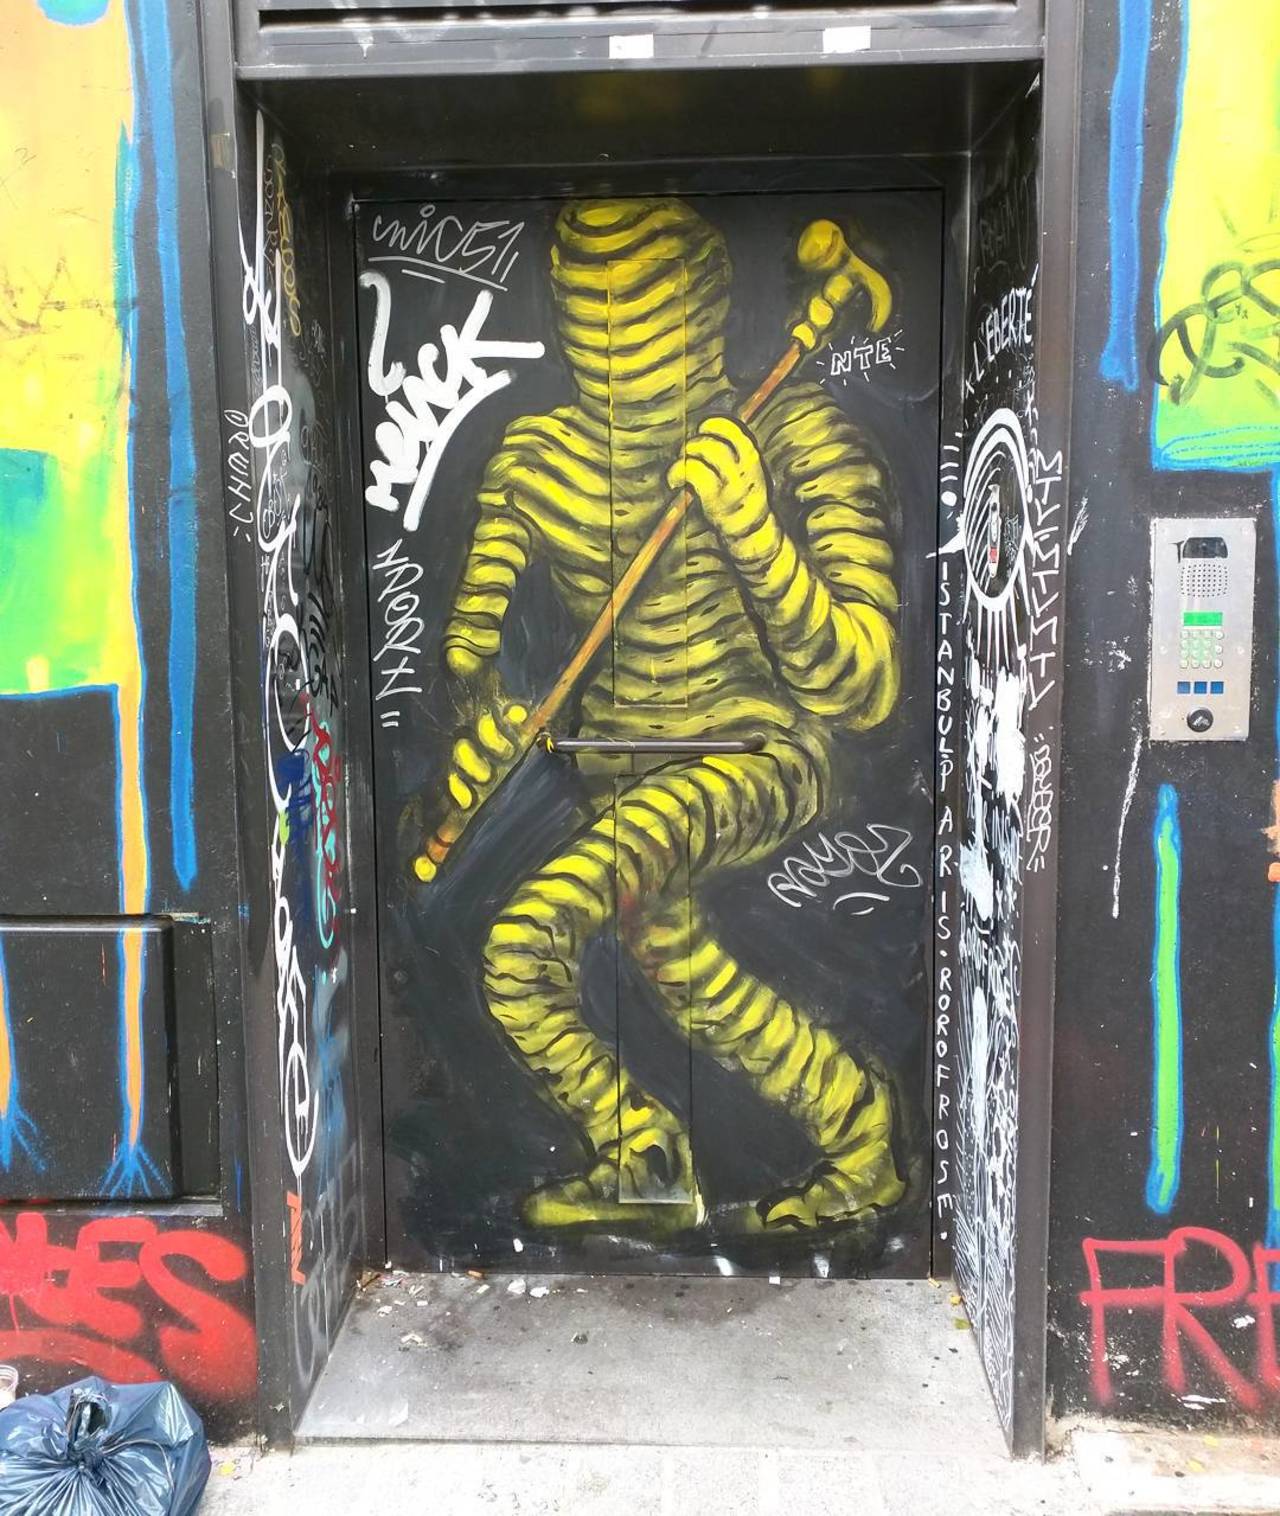 circumjacent_fr: #Paris #graffiti photo by alphaquadra http://ift.tt/1KOsgdQ #StreetArt http://t.co/zXCL6CaiNk